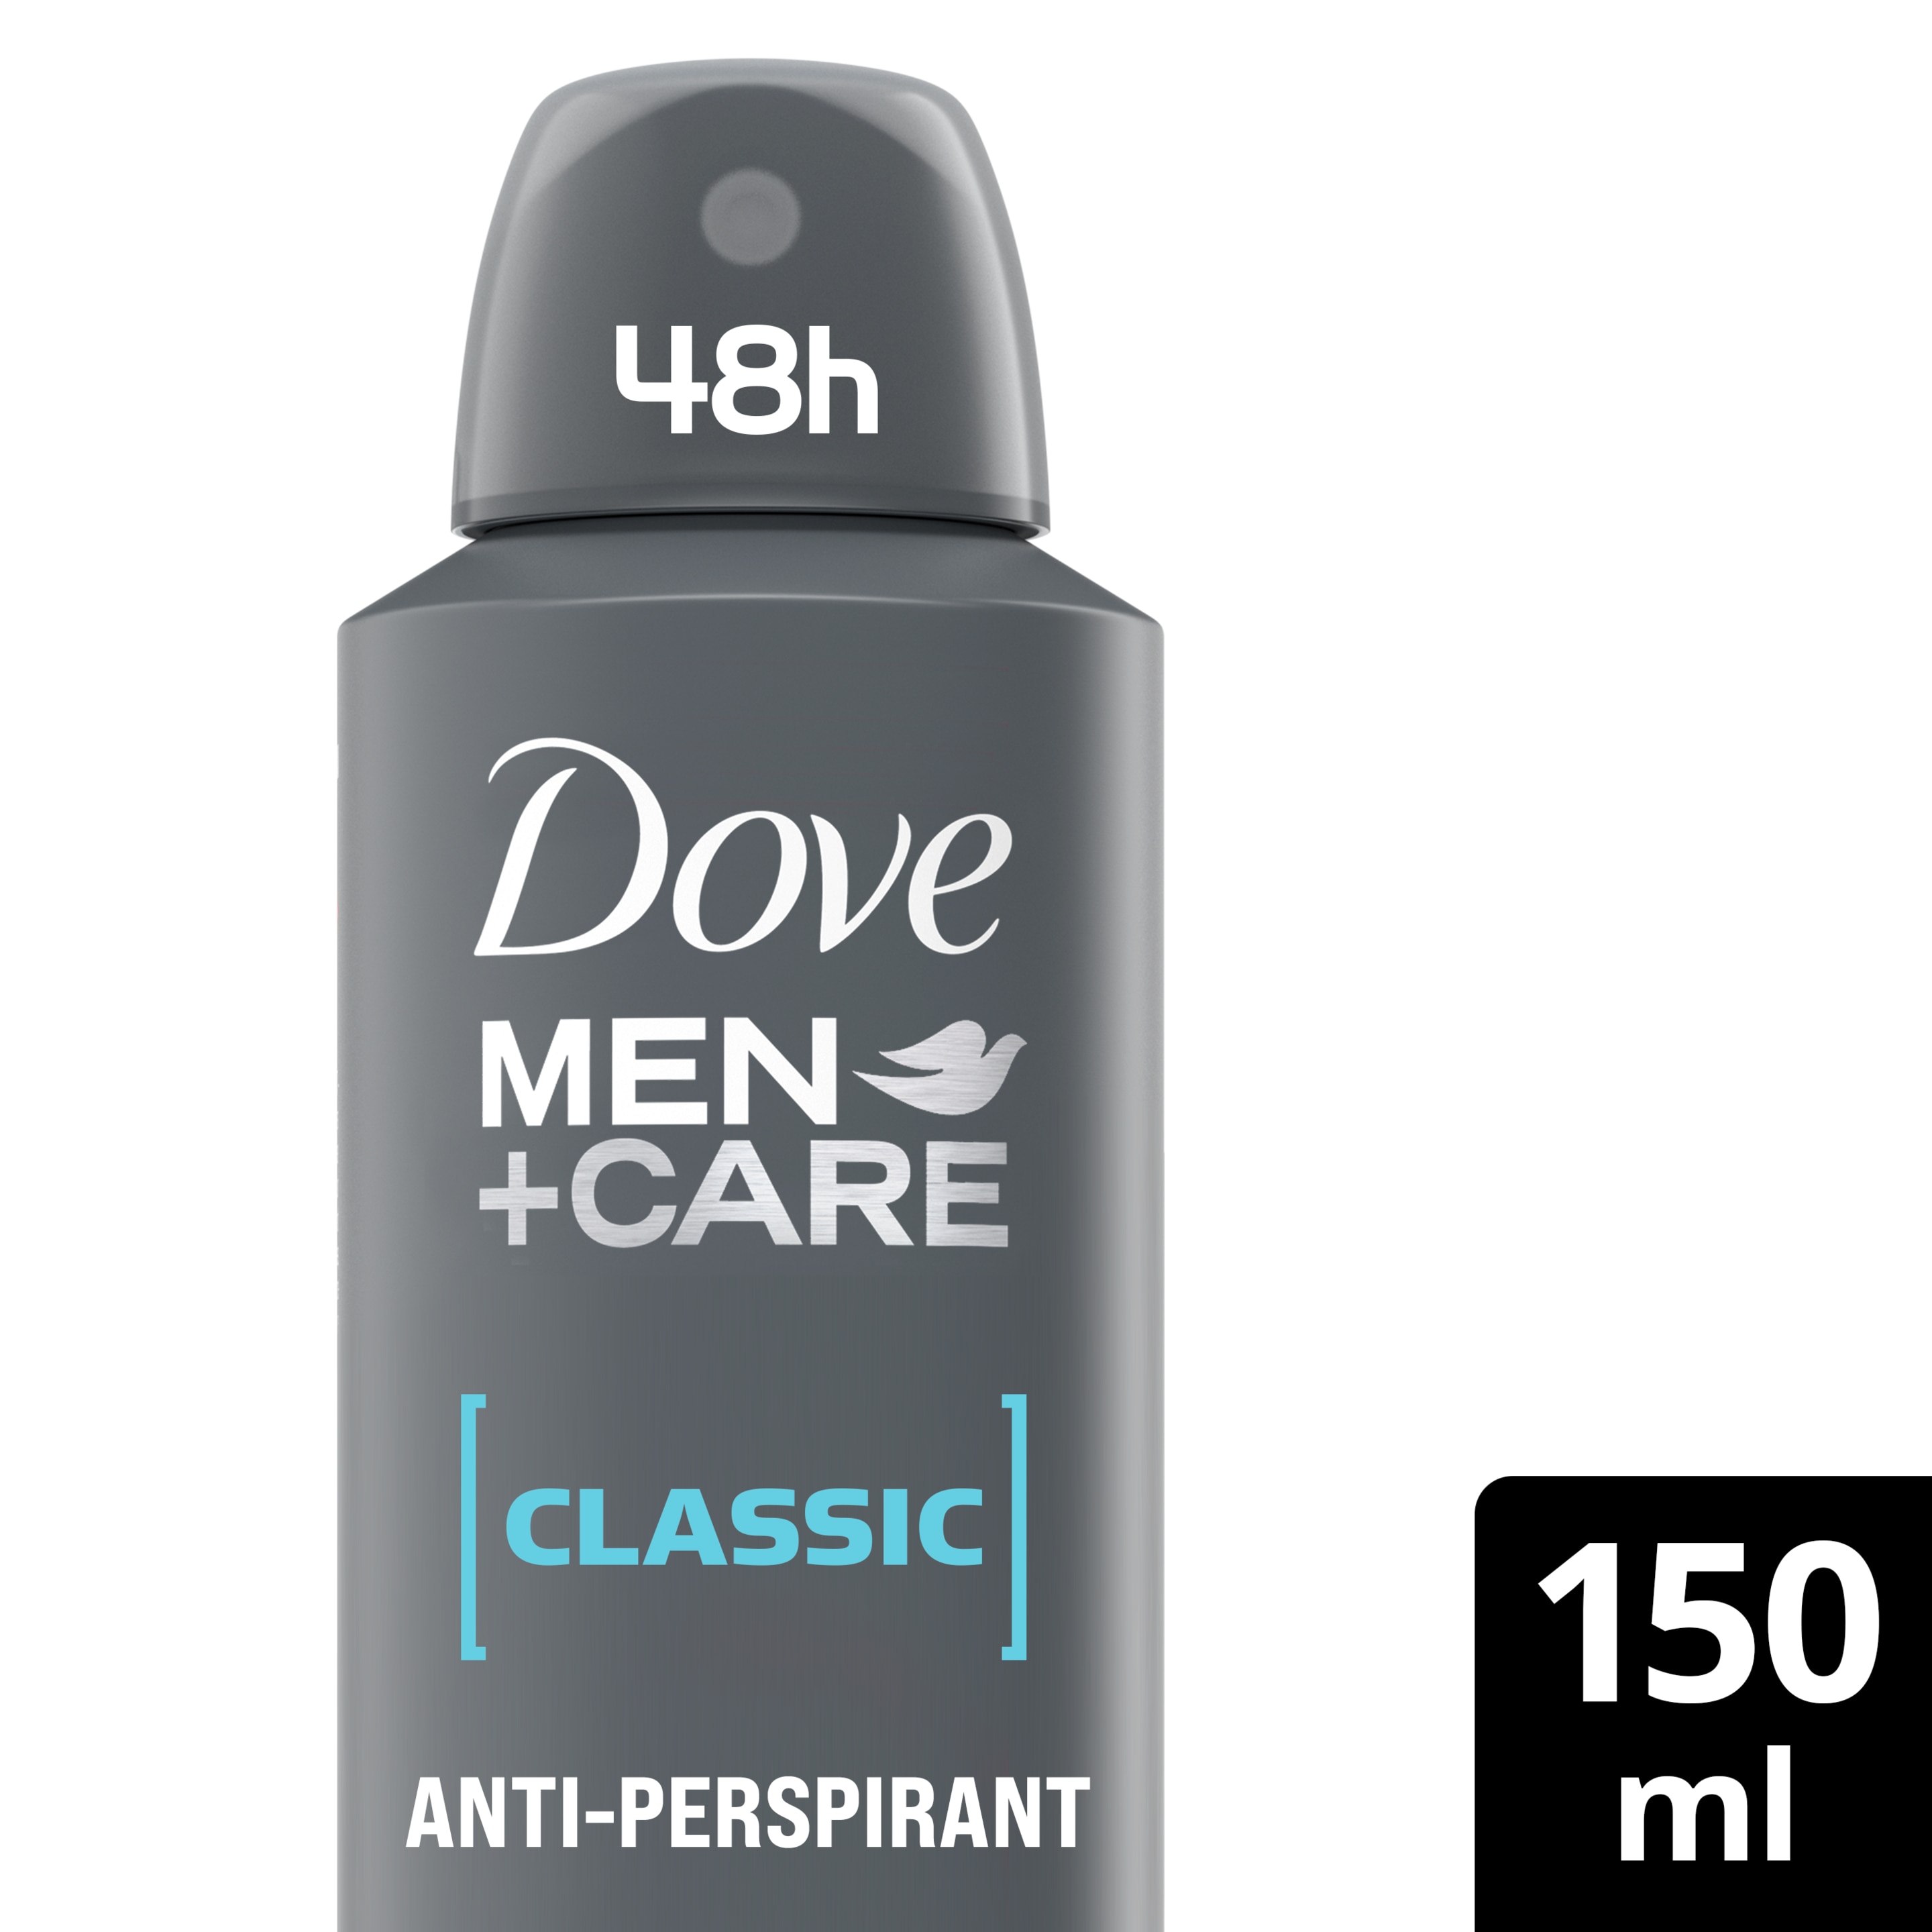 Men+Care Classic Antiperspirant Deodorant Aerosol